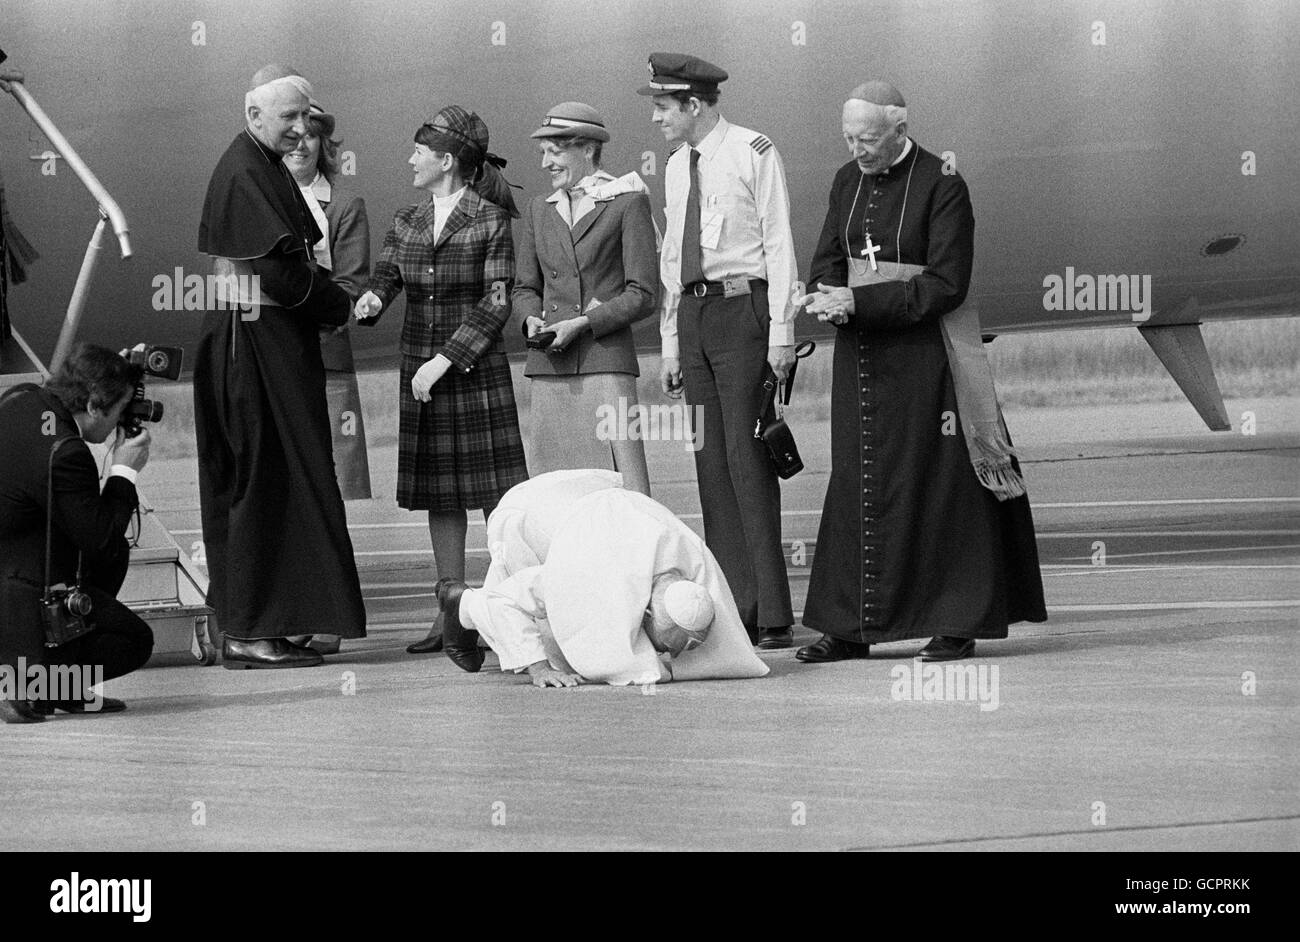 Le pape Jean-Paul II s'agenouille et embrasse le sol lorsqu'il arrive au pays de Galles le dernier jour de son voyage de six jours en Grande-Bretagne, accompagnant le Pape est l'archevêque de Westminster, le cardinal Basil Hume, vu serrer la main avec le personnel de l'aéroport. Banque D'Images